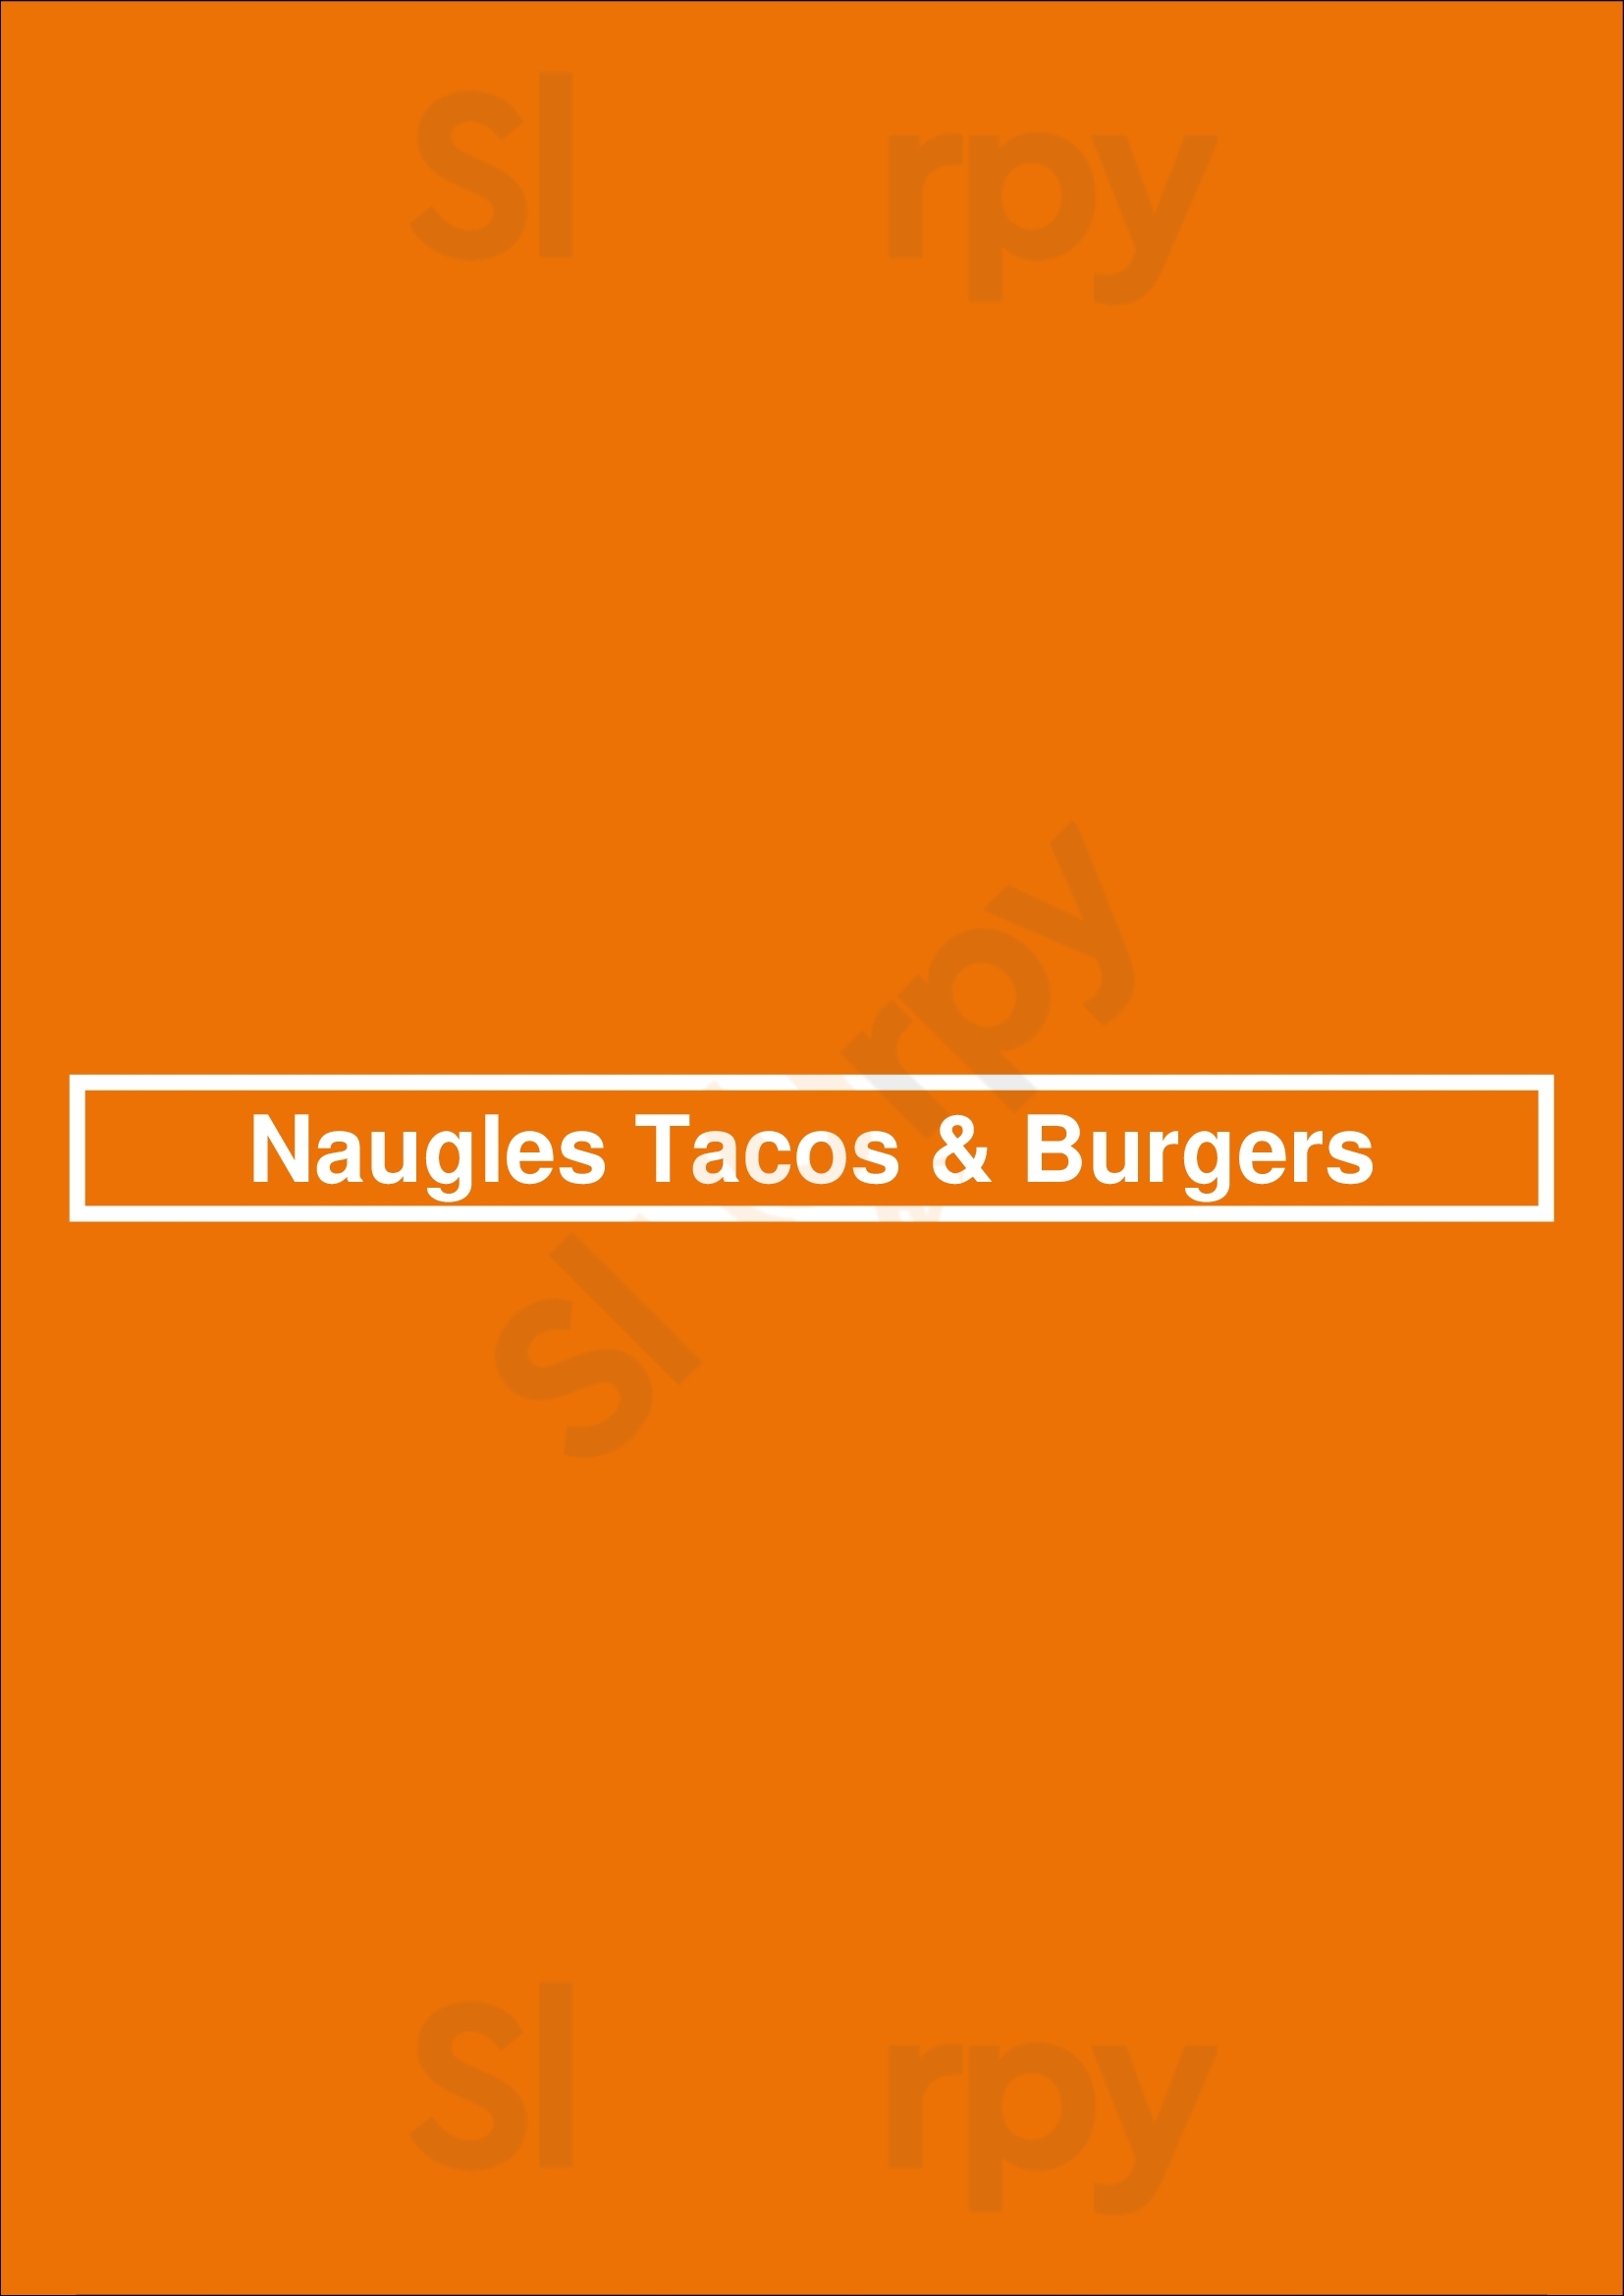 Naugles Tacos & Burgers Westminster Menu - 1